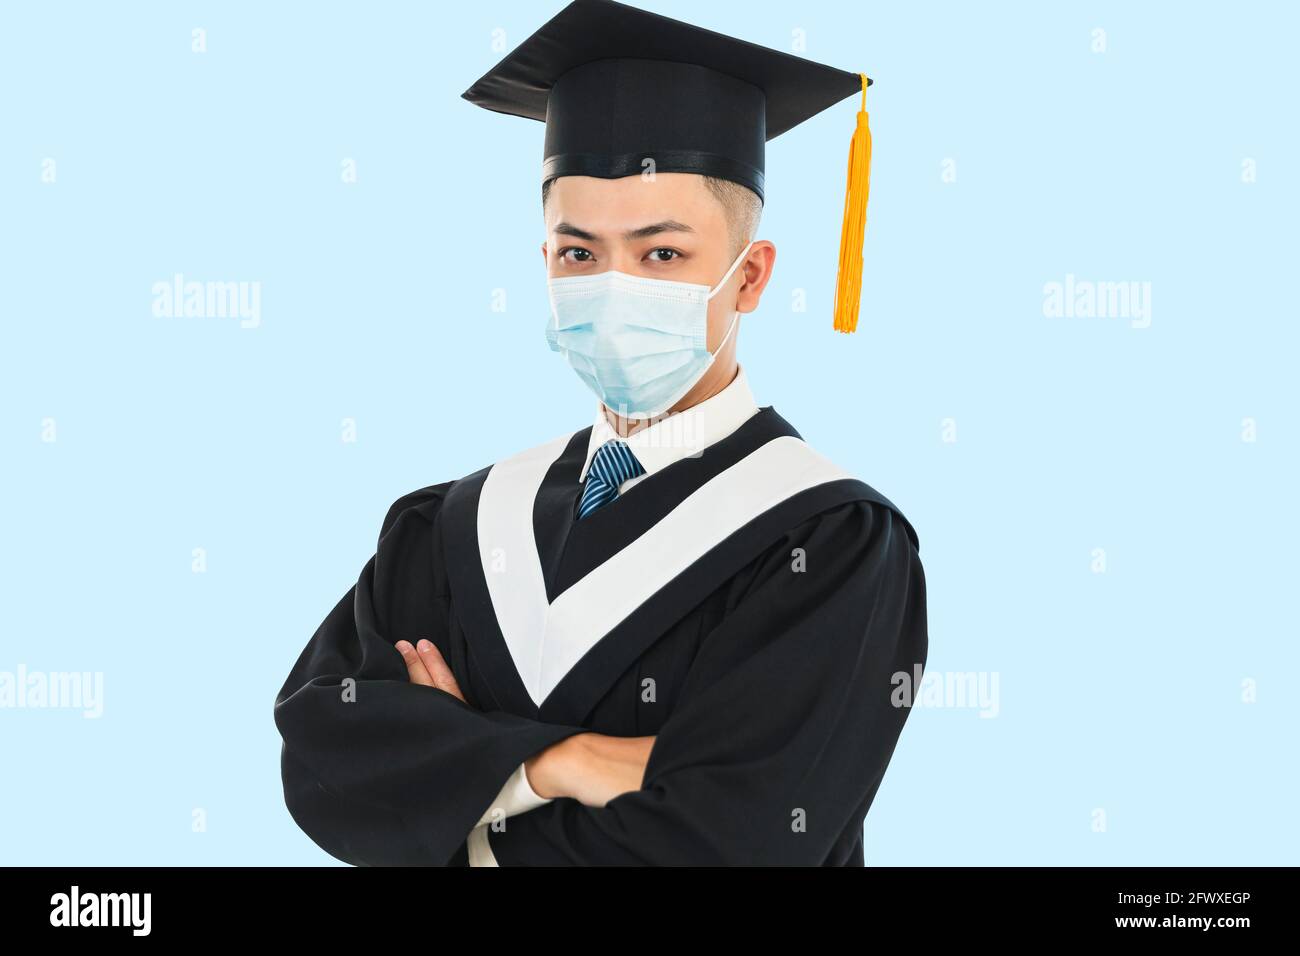 graduación masculina joven con máscara facial durante la pandemia del coronavirus Foto de stock